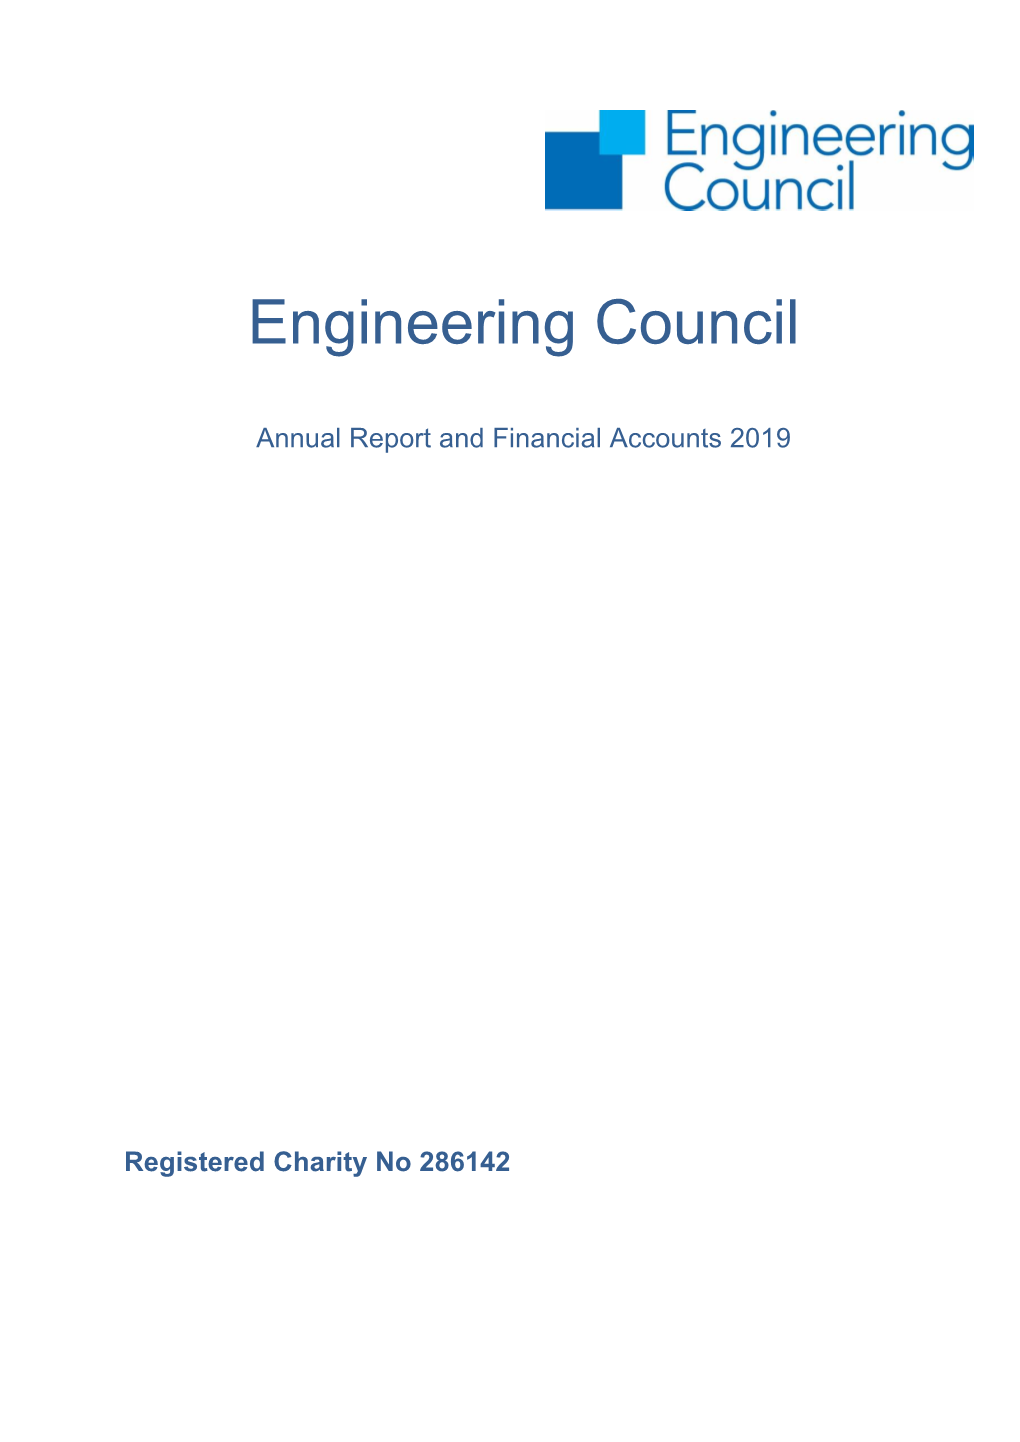 Annual Report 2019.Pdf